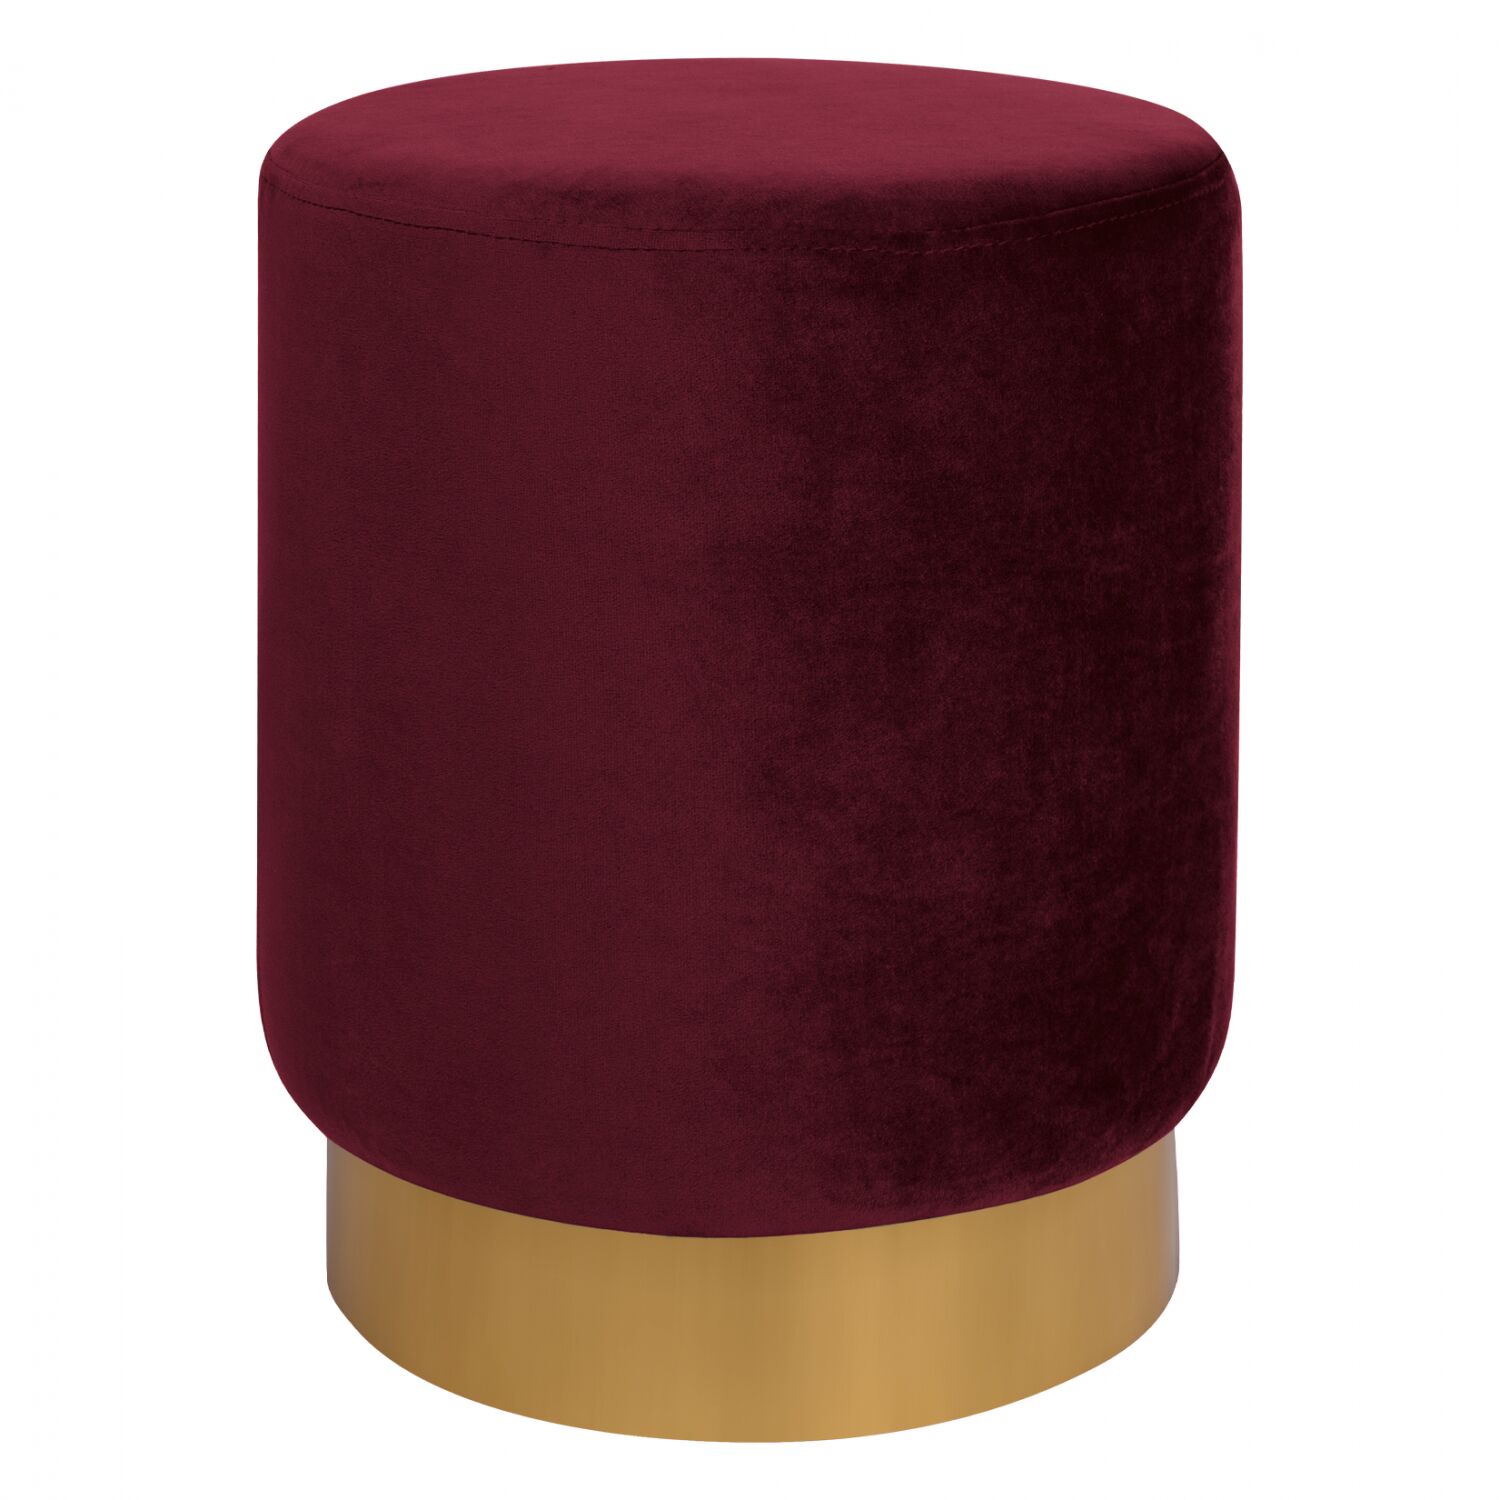 Velvet stool Levy HM8408.06 in bordeaux color with gold base D35x43 cm.